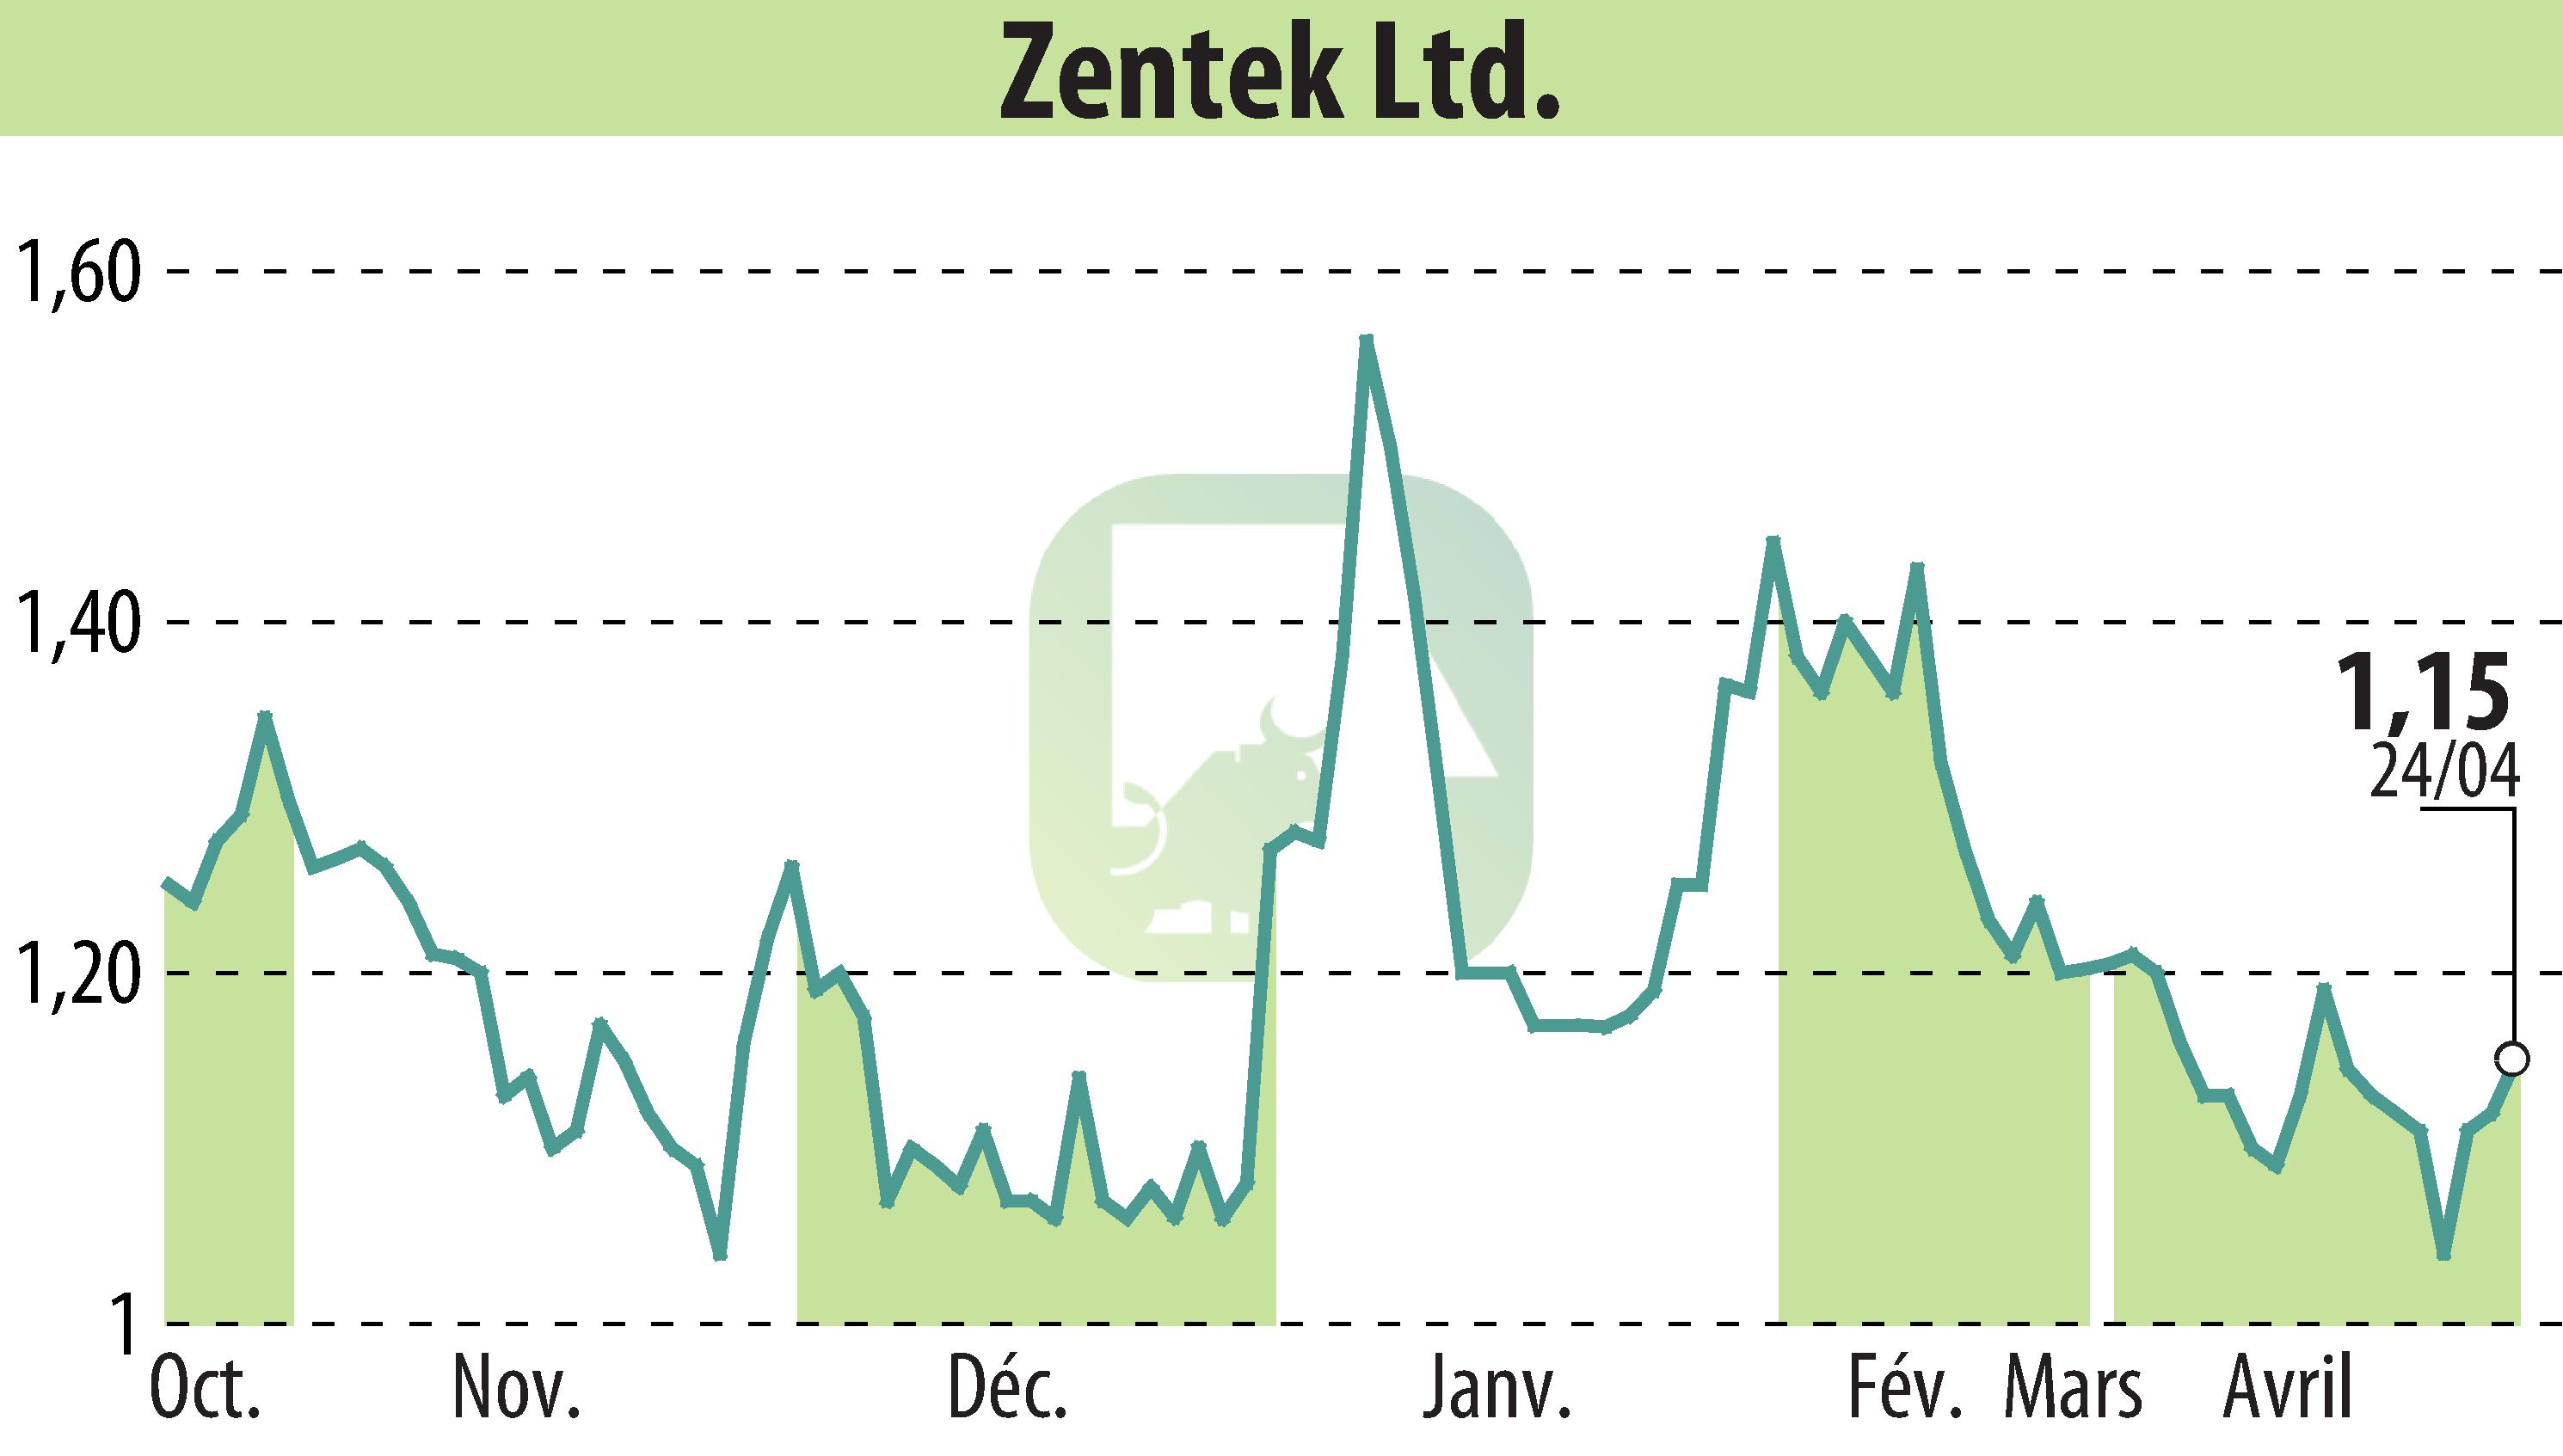 Stock price chart of Zentek Ltd. (EBR:ZTEK) showing fluctuations.